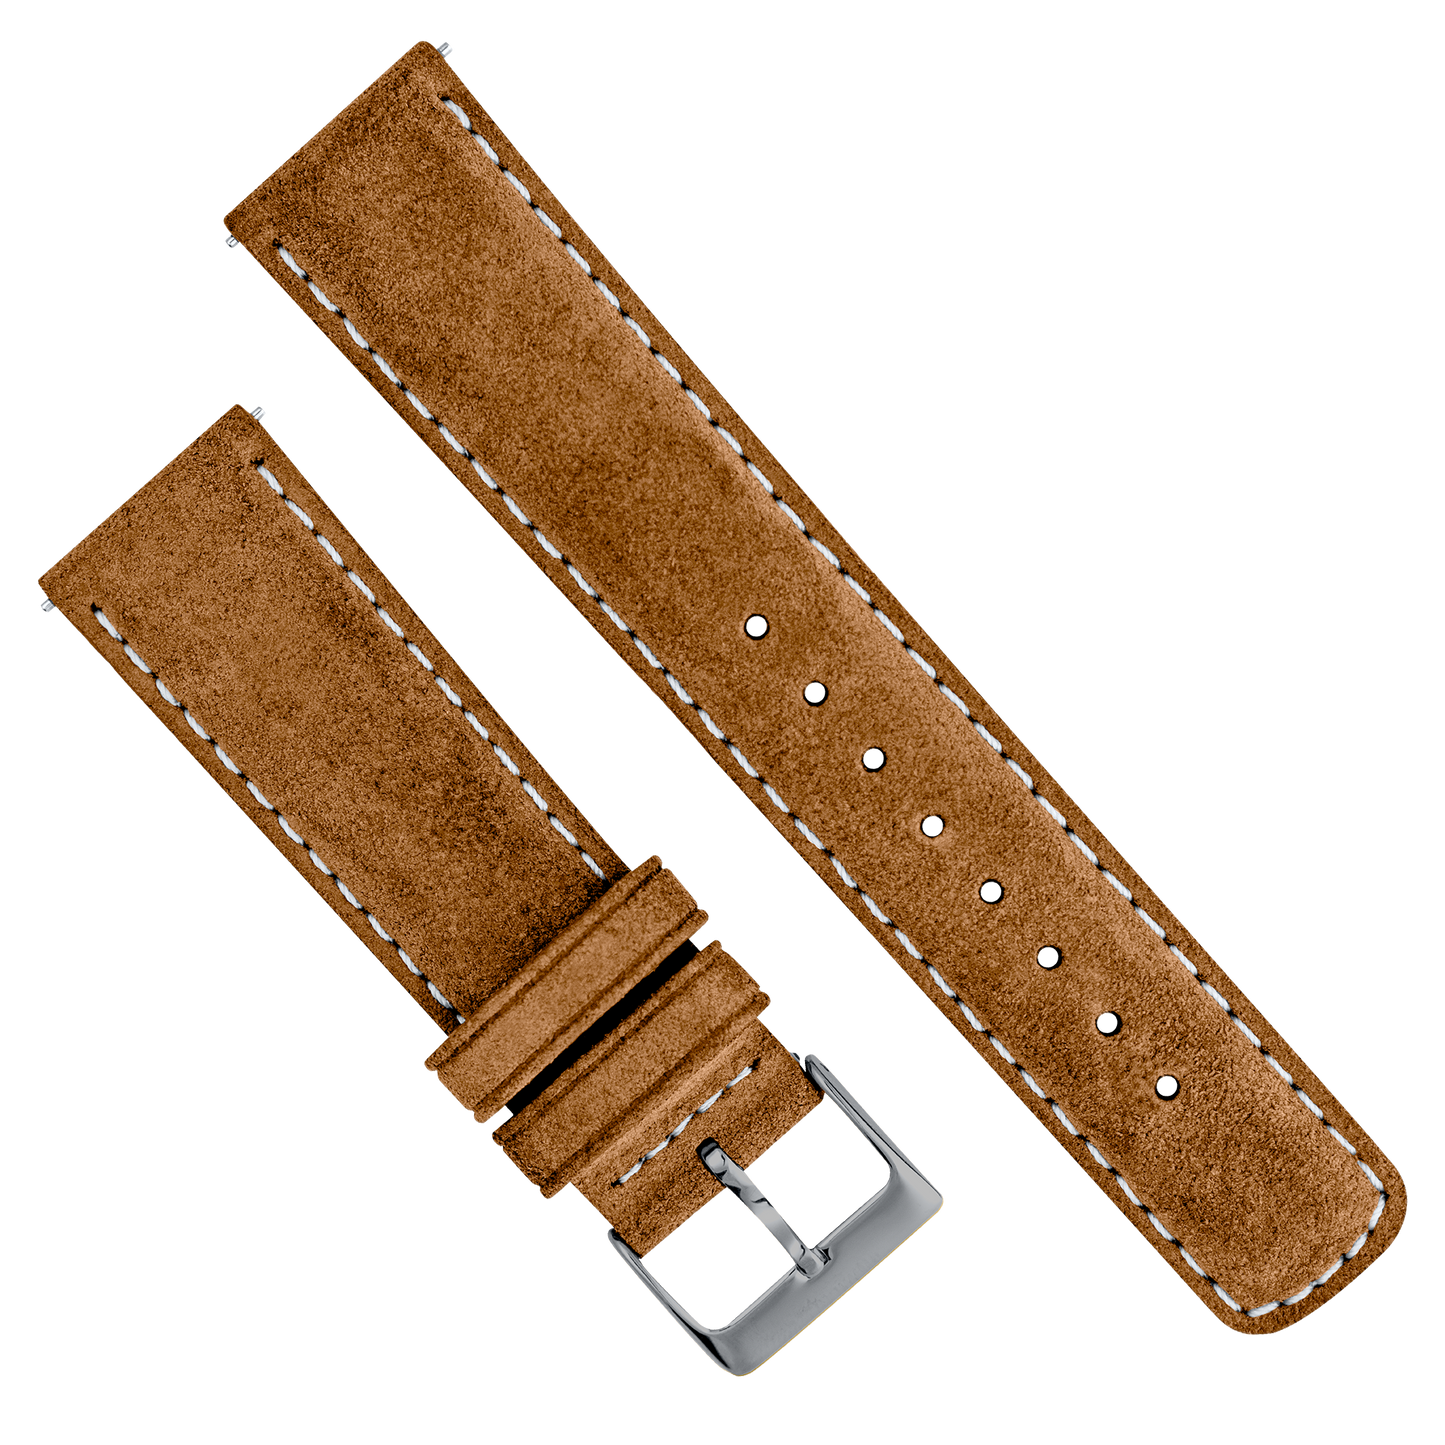 Cognac Brown Suede | Beige Stitching - Barton Watch Bands